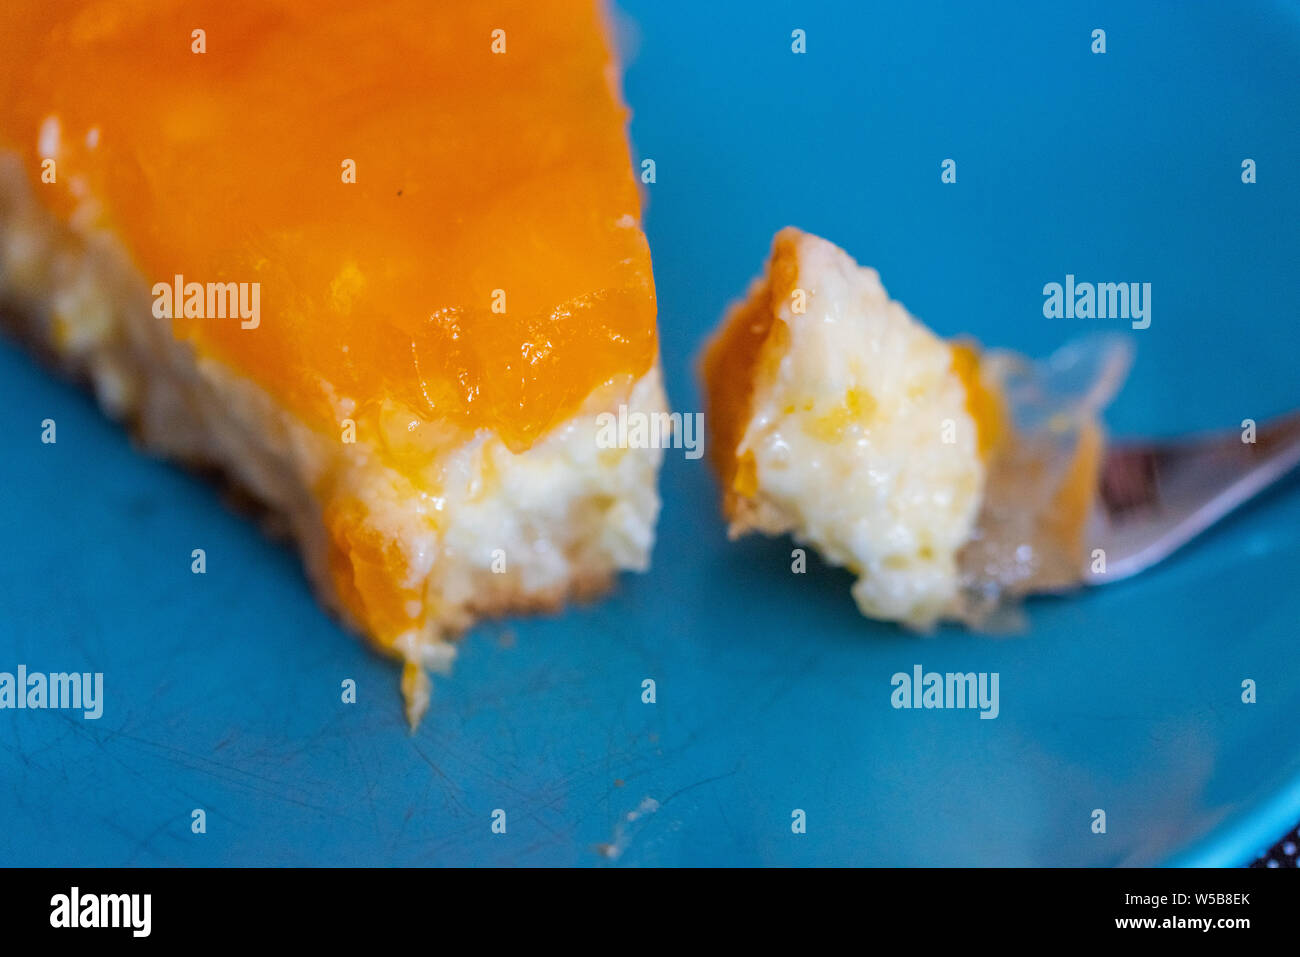 Eine hausgemachte saure Sahne Mandarinen Kuchen Stockfoto